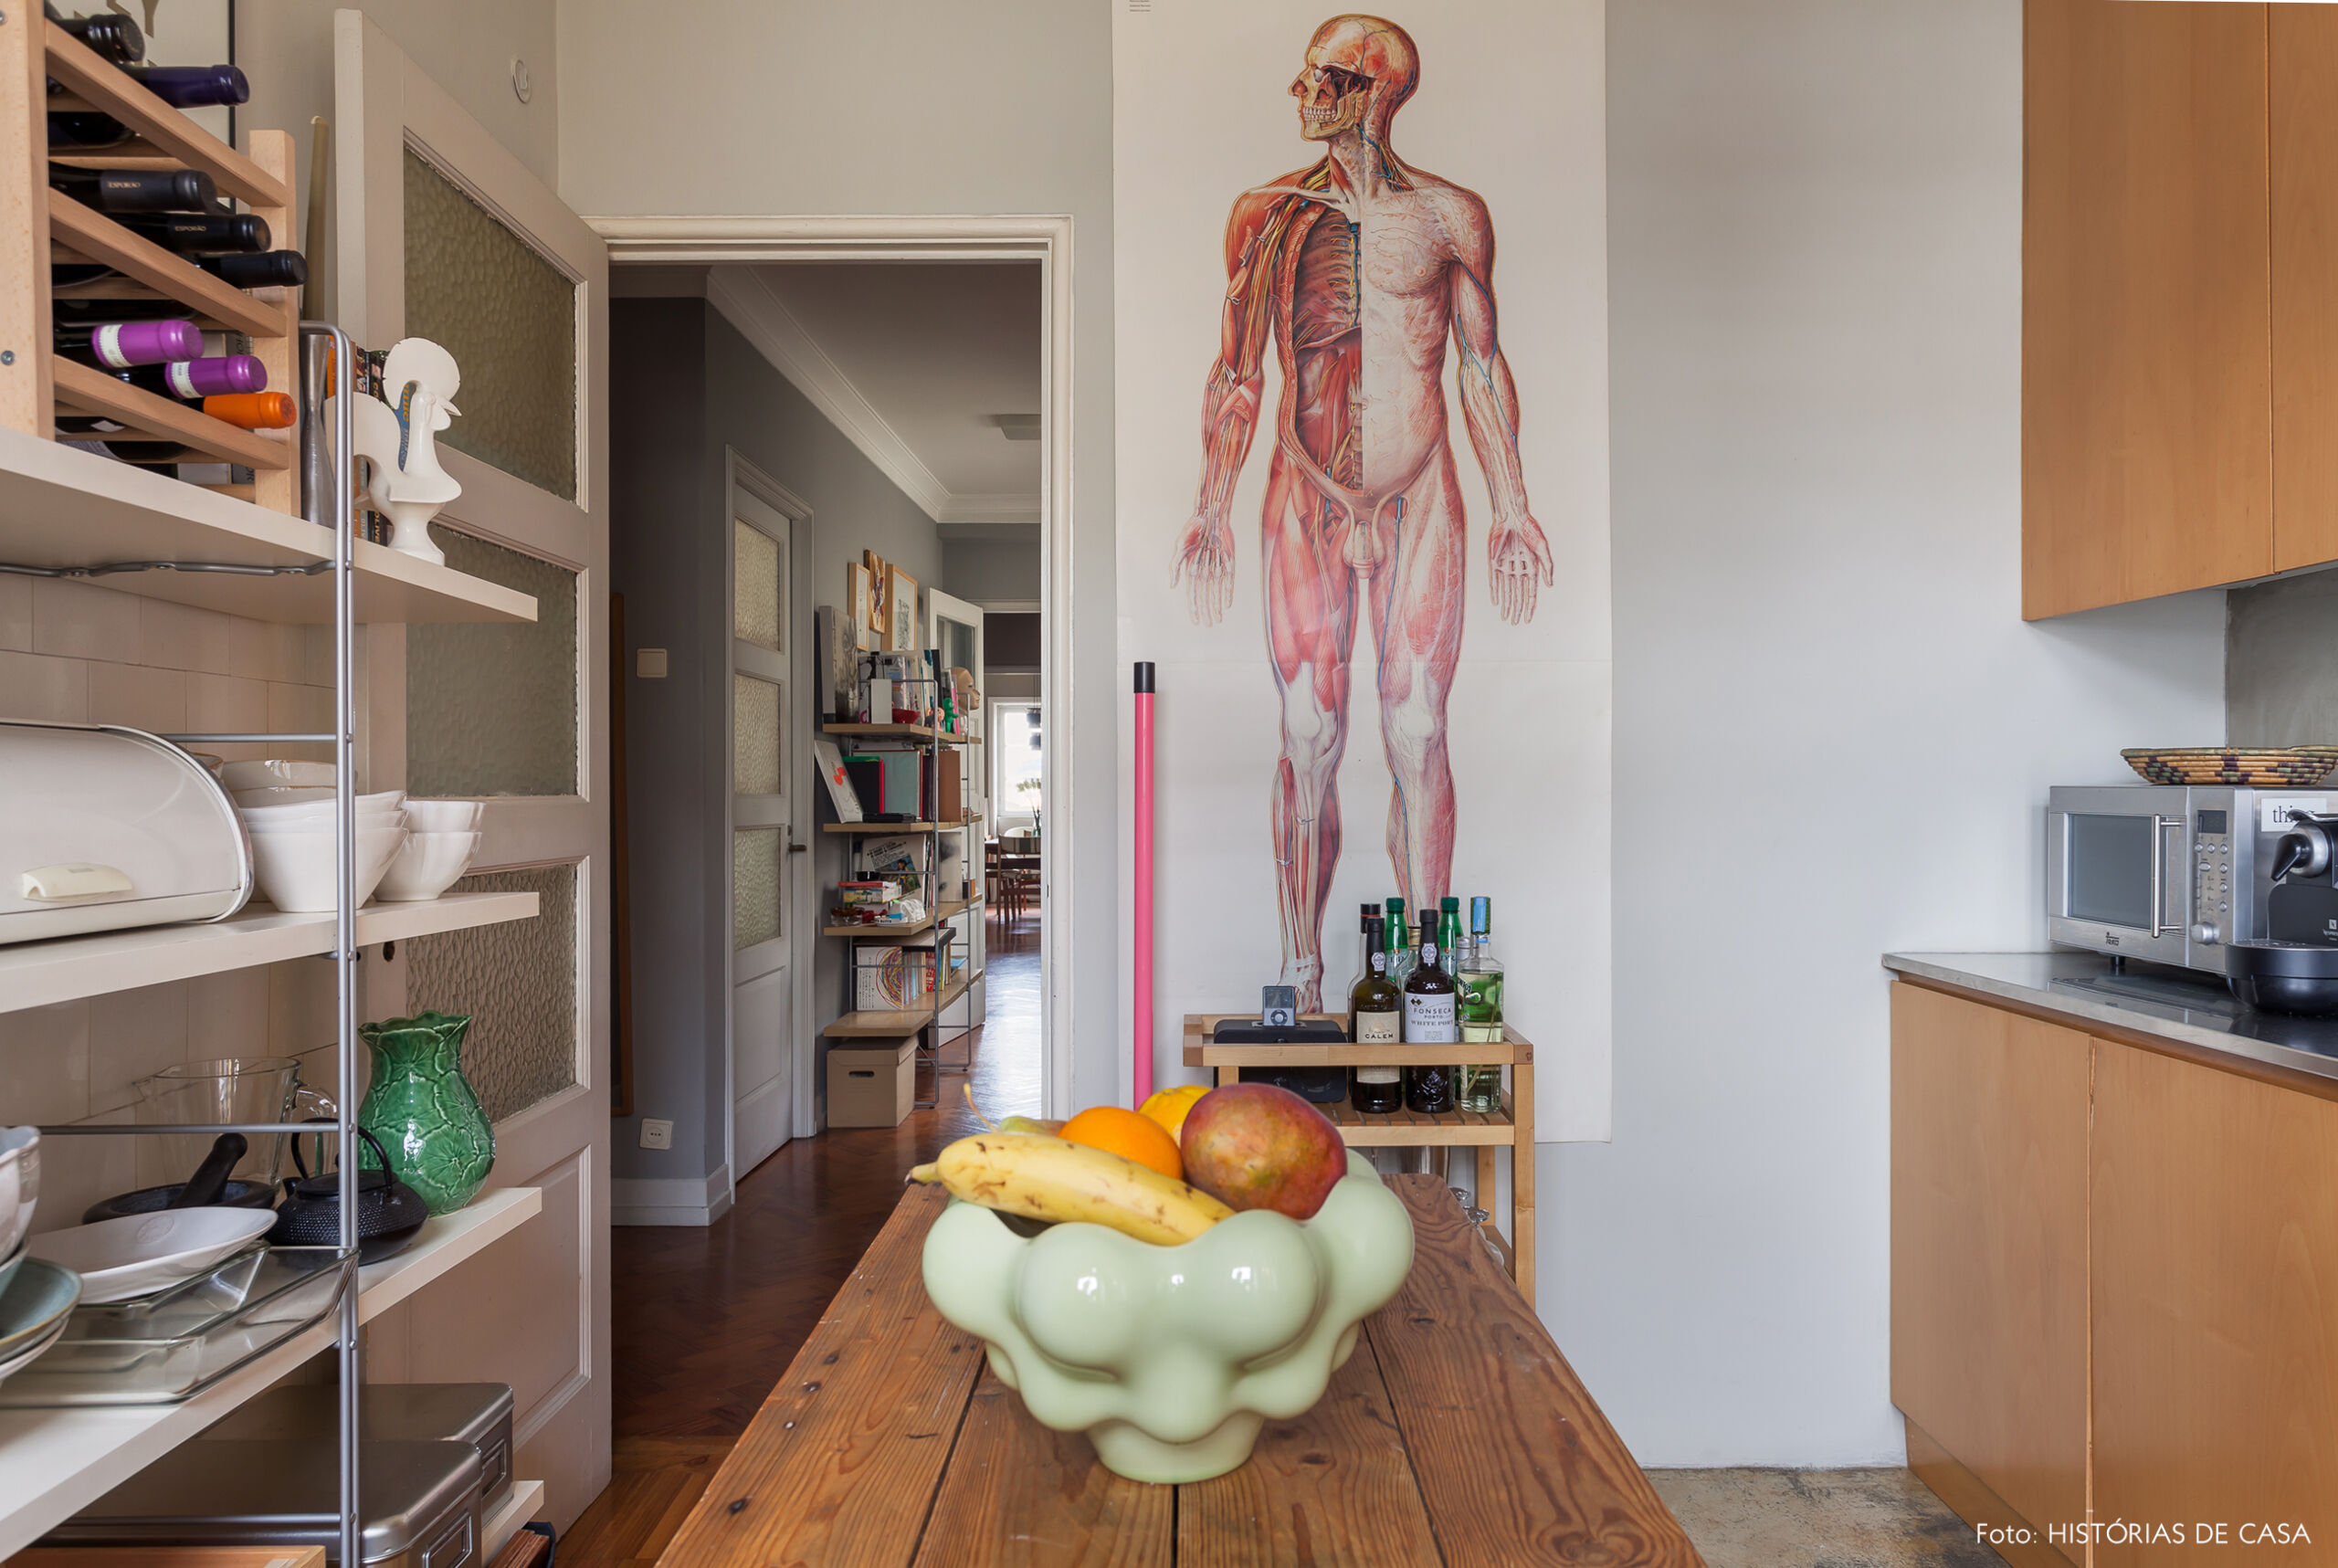 Pôster de anatomia e detalhes bacanas em cozinha reformada